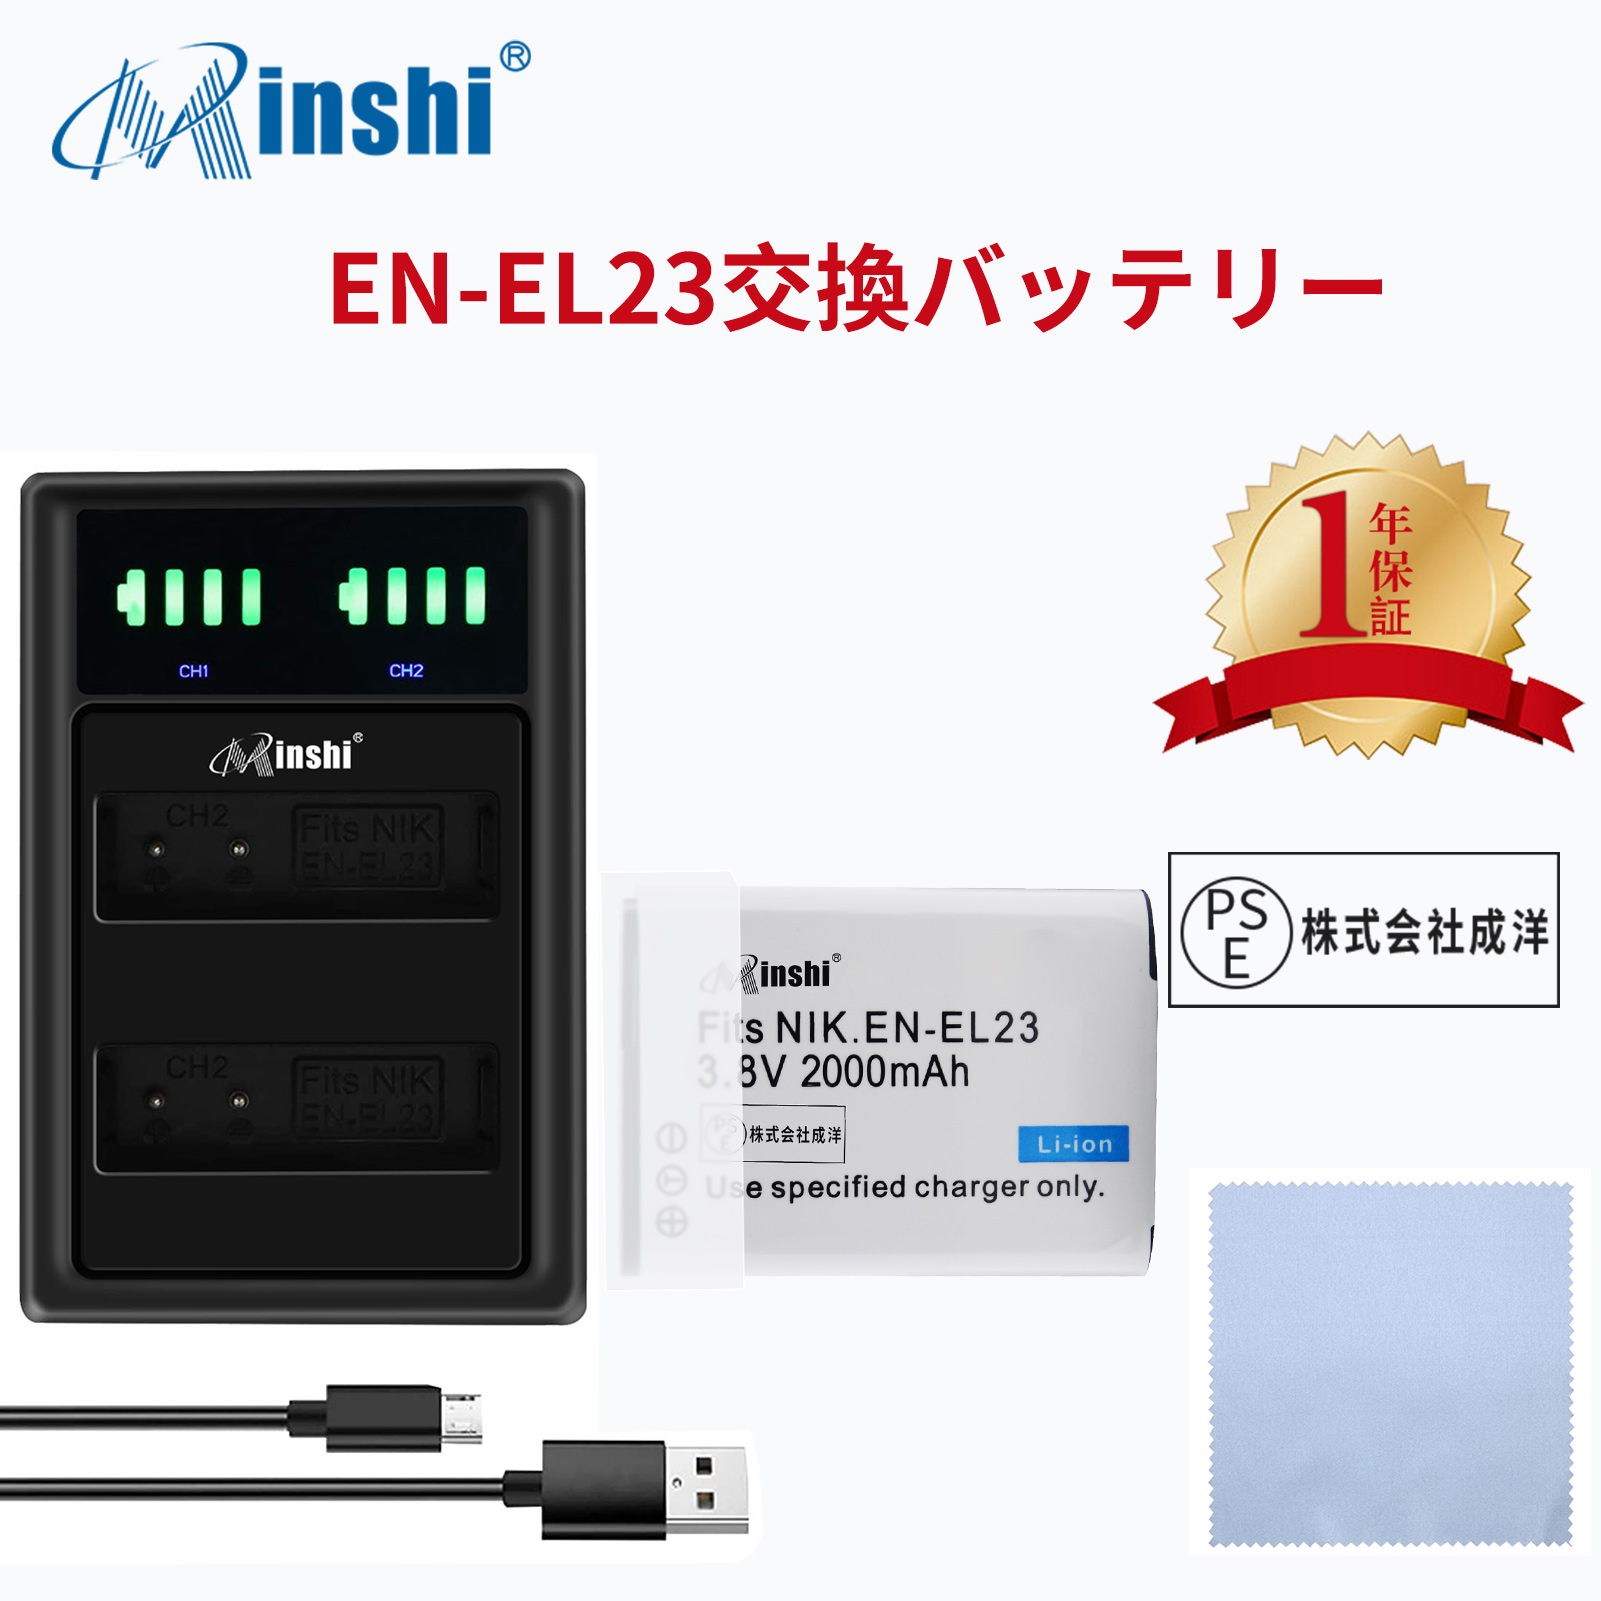 【セット】NIKON  P610S B700 対応  互換バッテリー 2000mAh PSE認定済  Coolpix P600 P900 高品質 EN-EL23 交換用バッテリー